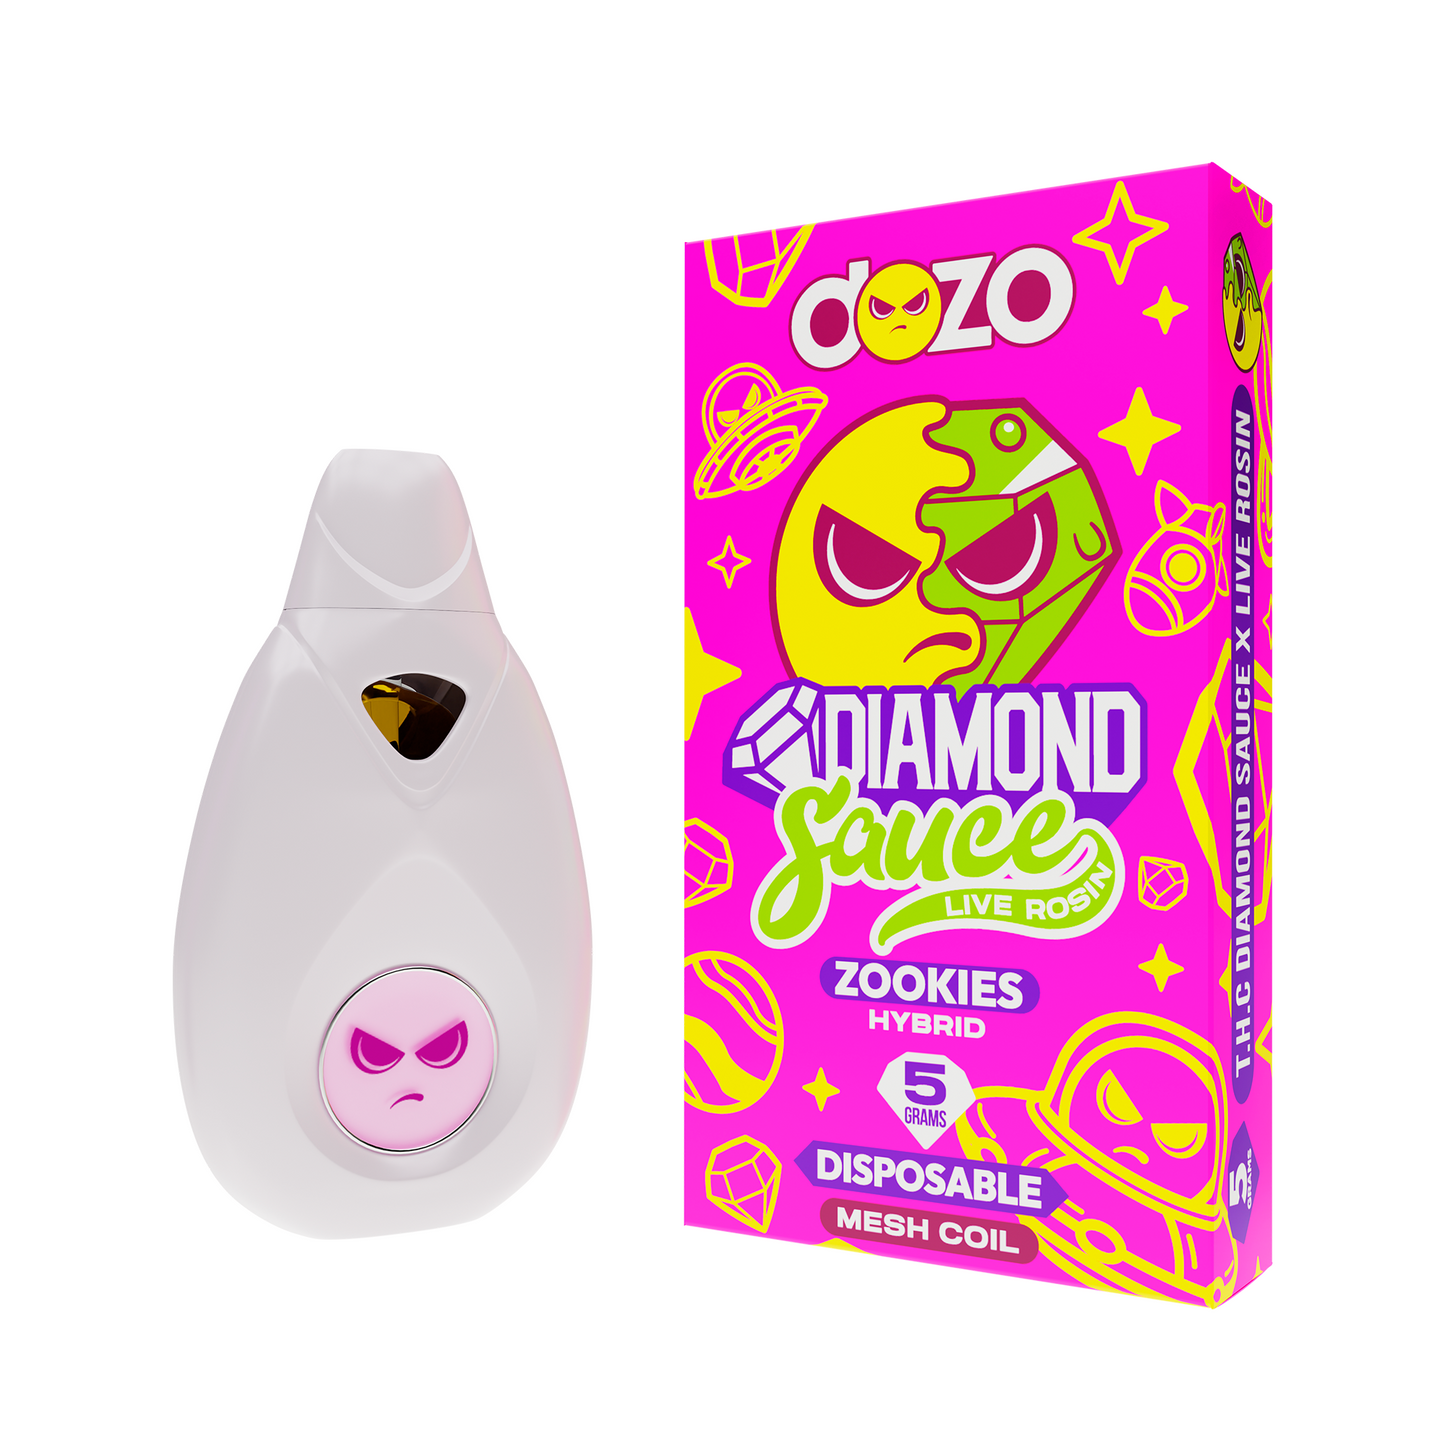 Diamond Sauсe Disposable 5g | Zookies (Hybrid)